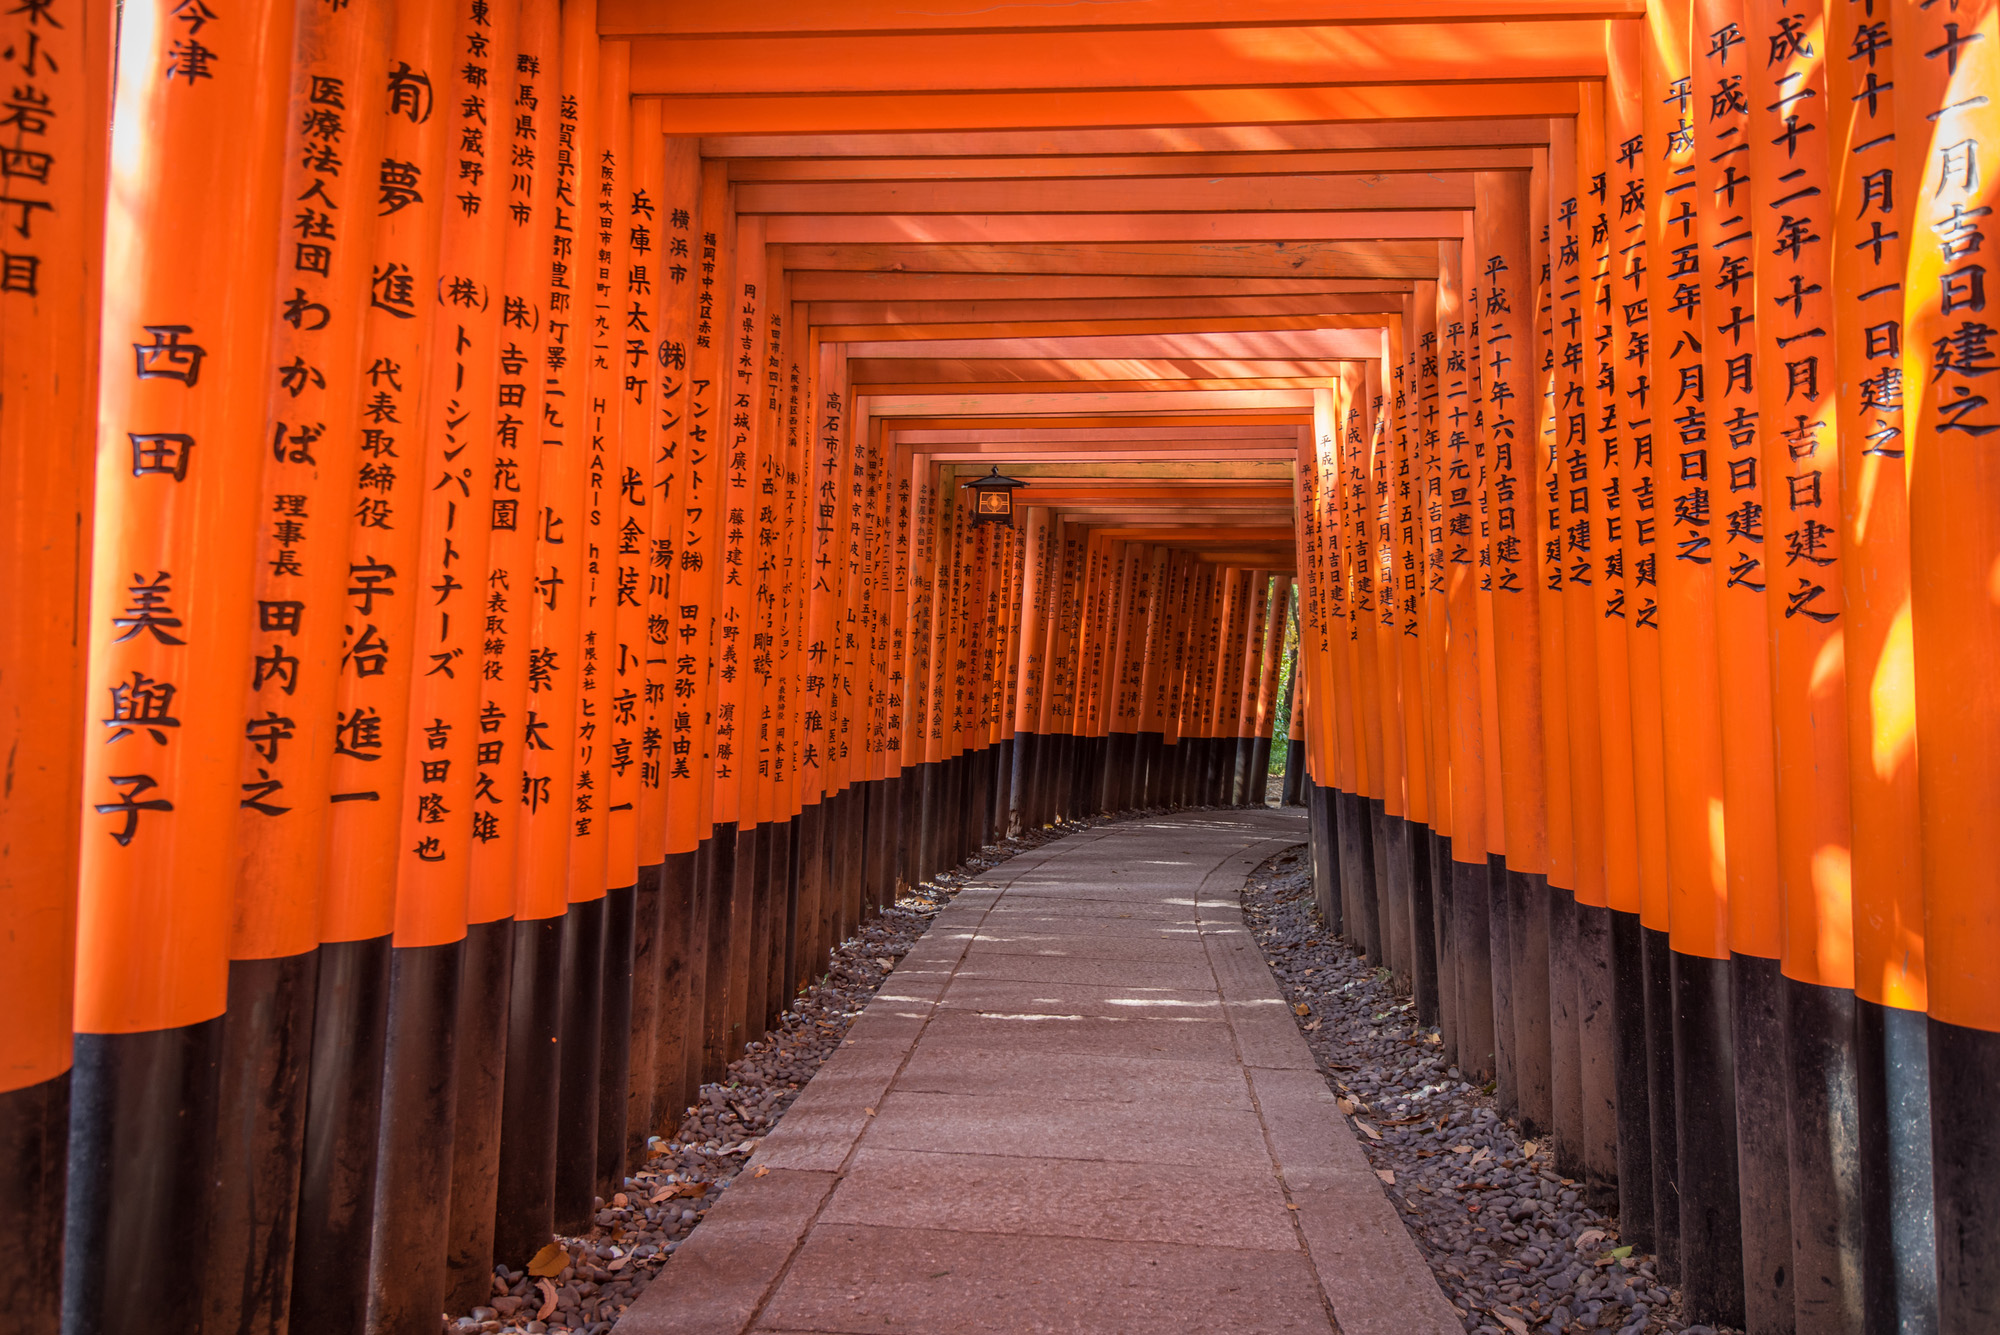 Auf den Torii im berühmten Fushimi-Inari-Schrein in Kyoto stehen die Namen der Sponsoren.